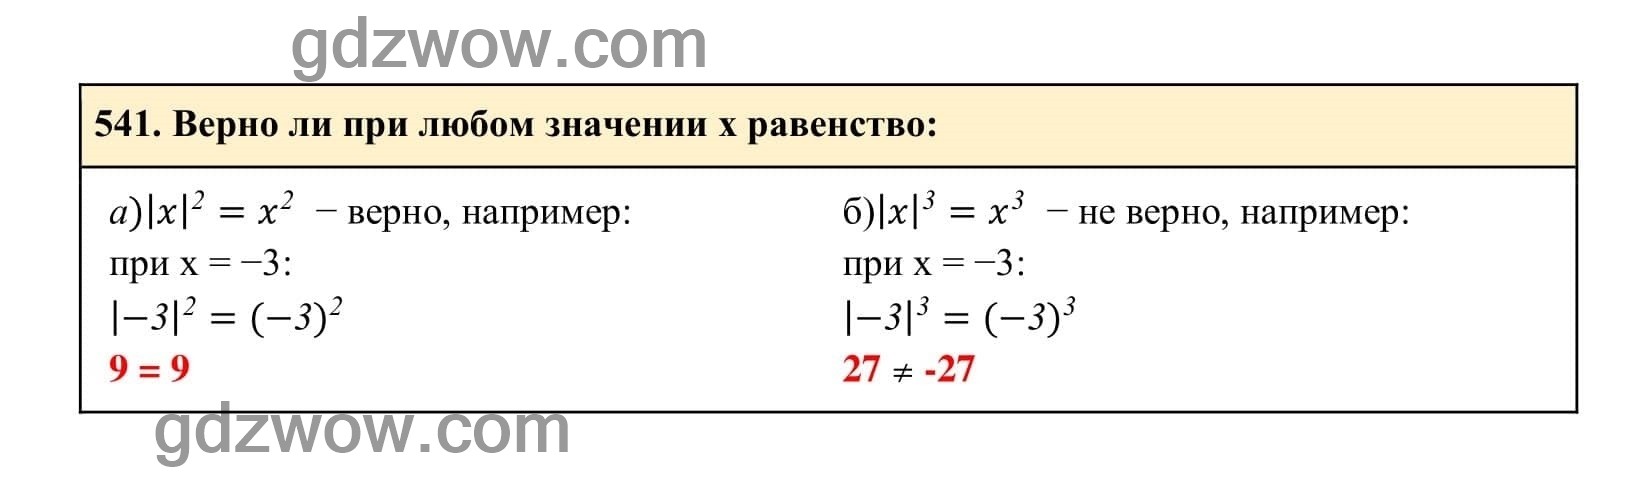 Упражнение 541 - ГДЗ по Алгебре 7 класс Учебник Макарычев (решебник) - GDZwow